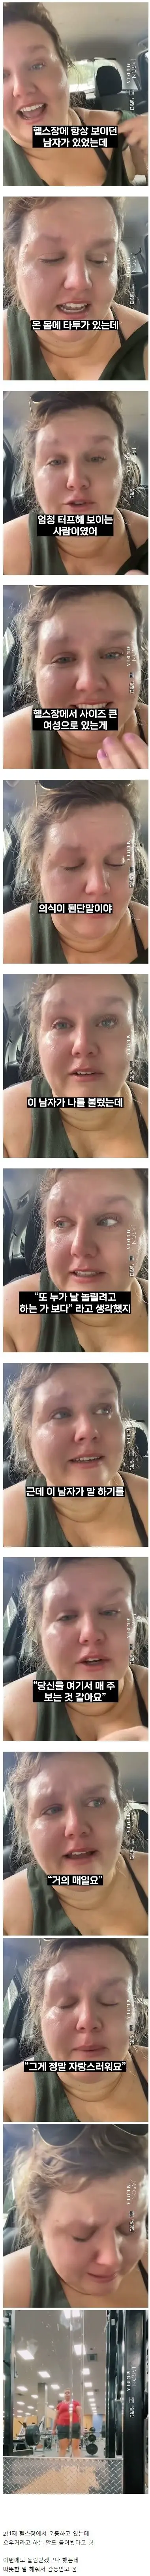 헬스장에서 고도비만녀가 오열한 이유 | mbong.kr 엠봉